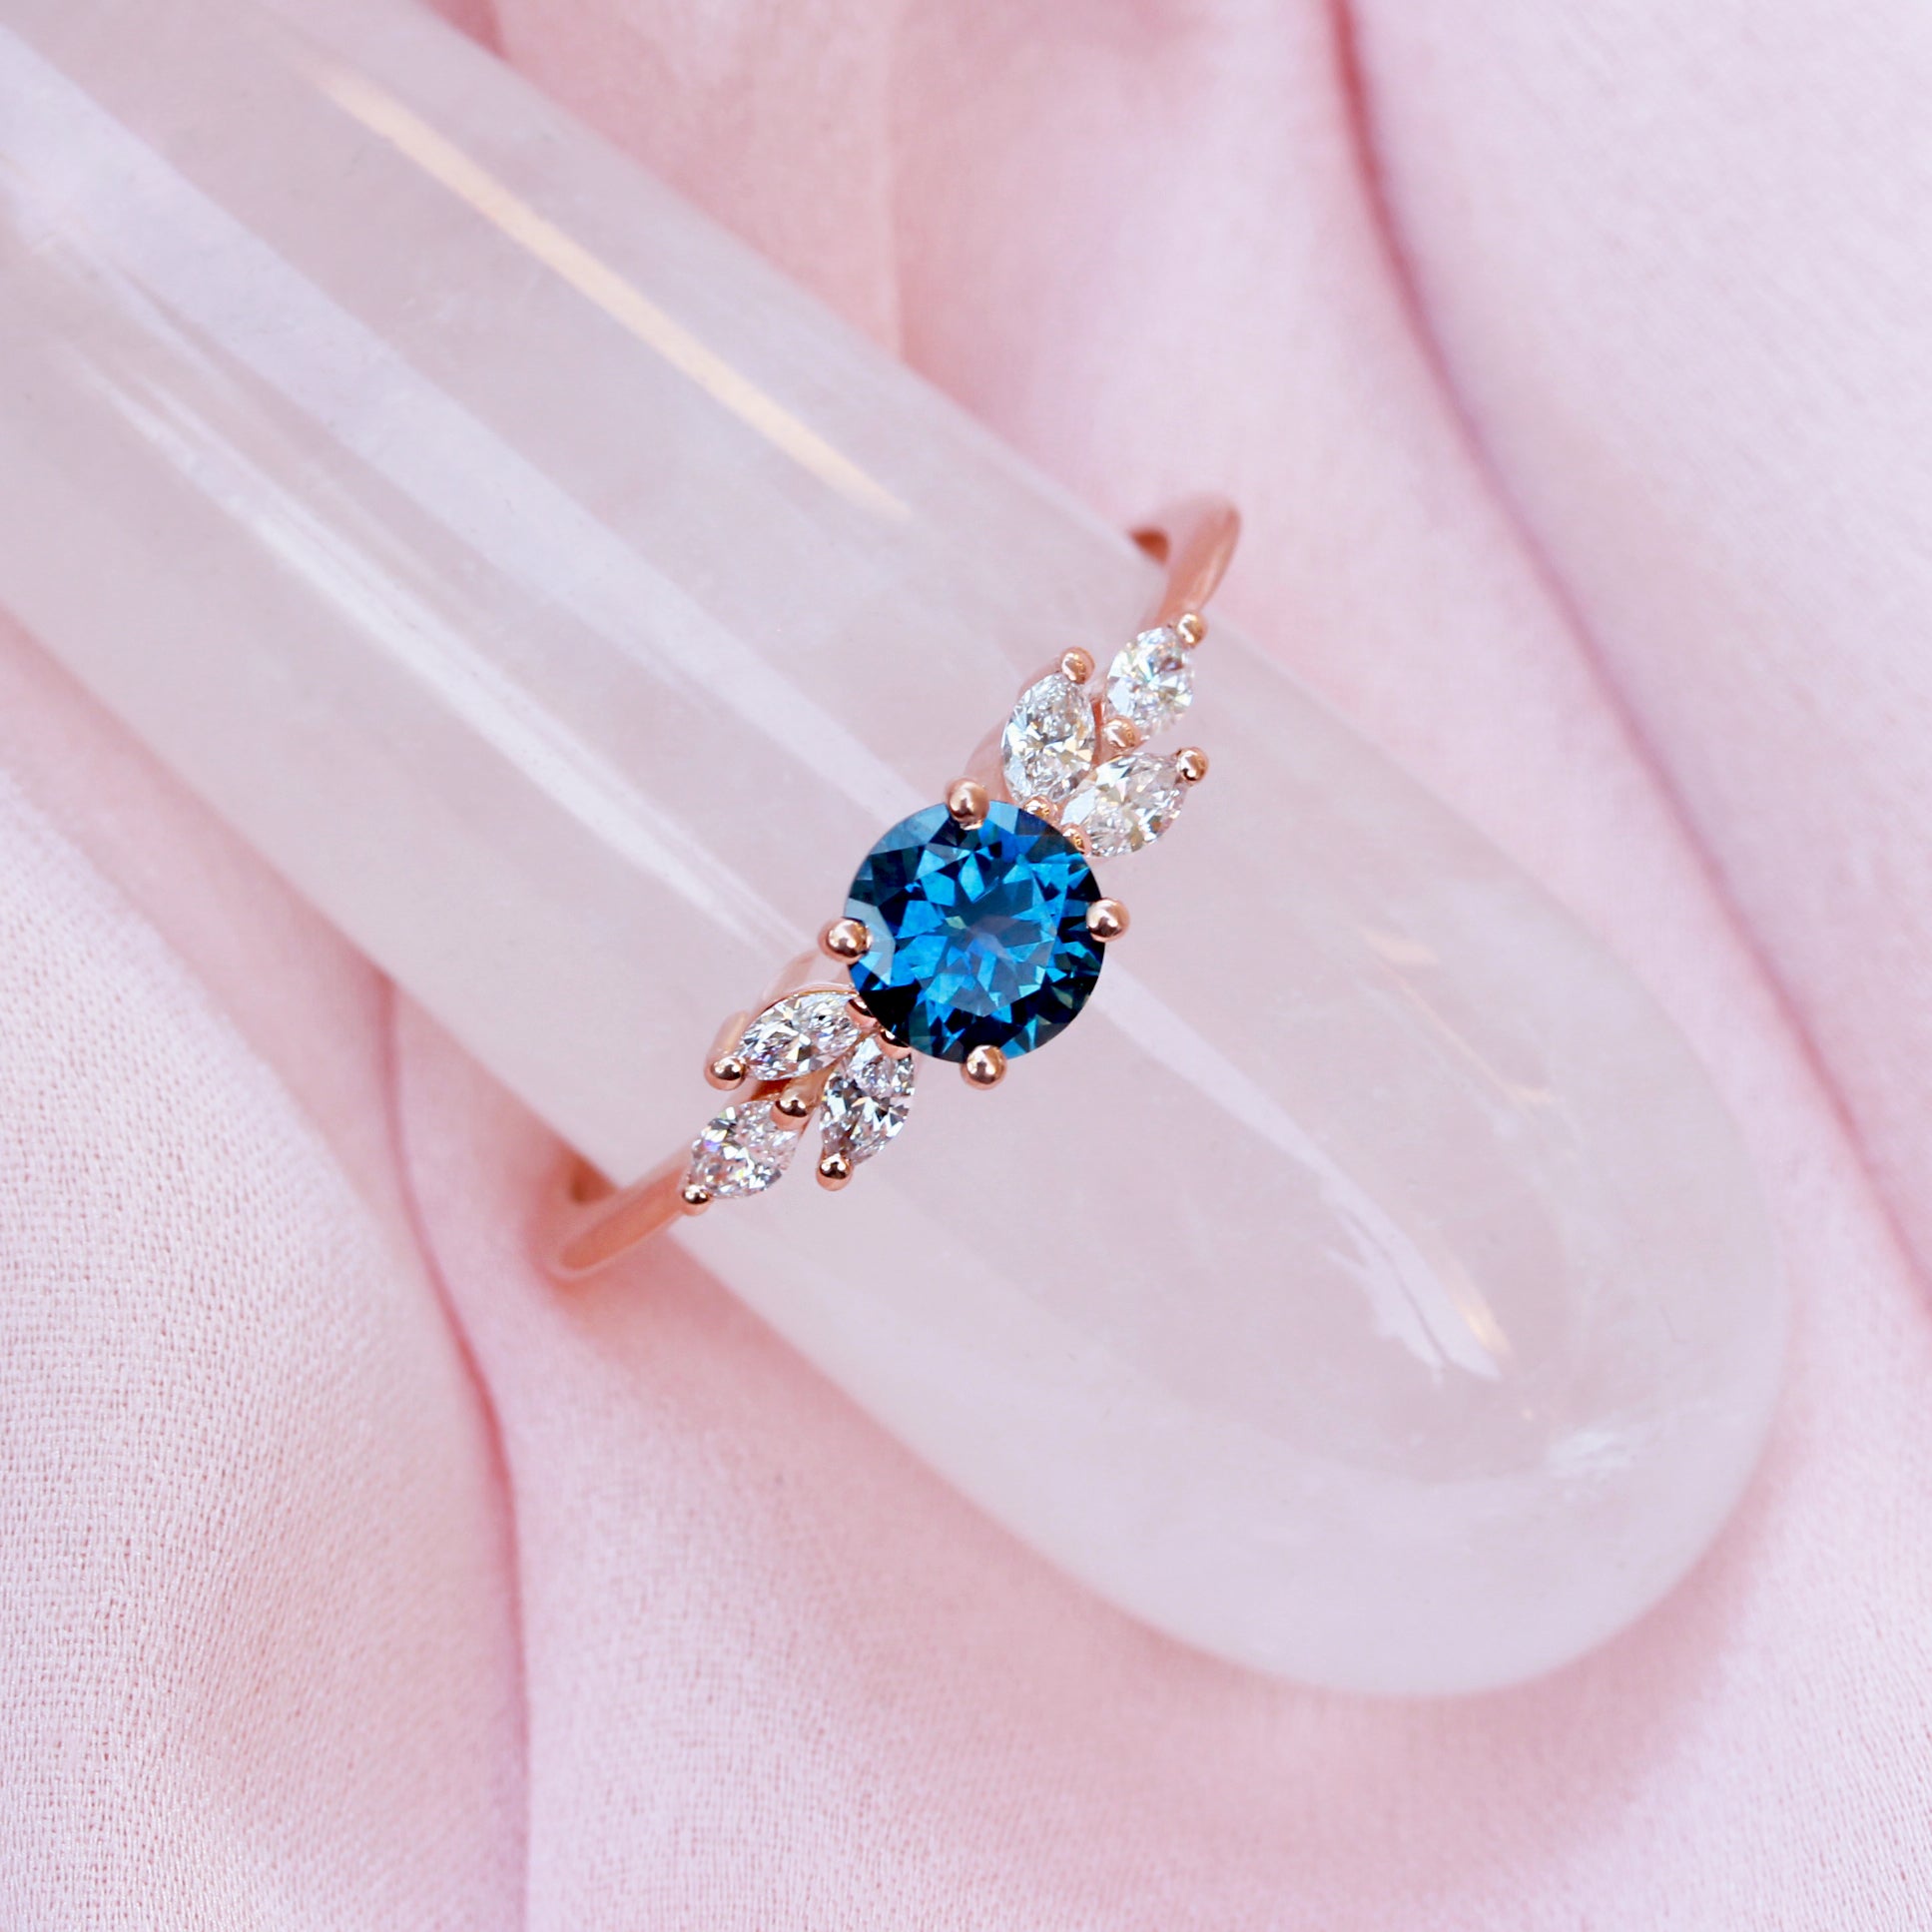 Montana Blue Sapphire & diamonds unique engagement ring - Penelope